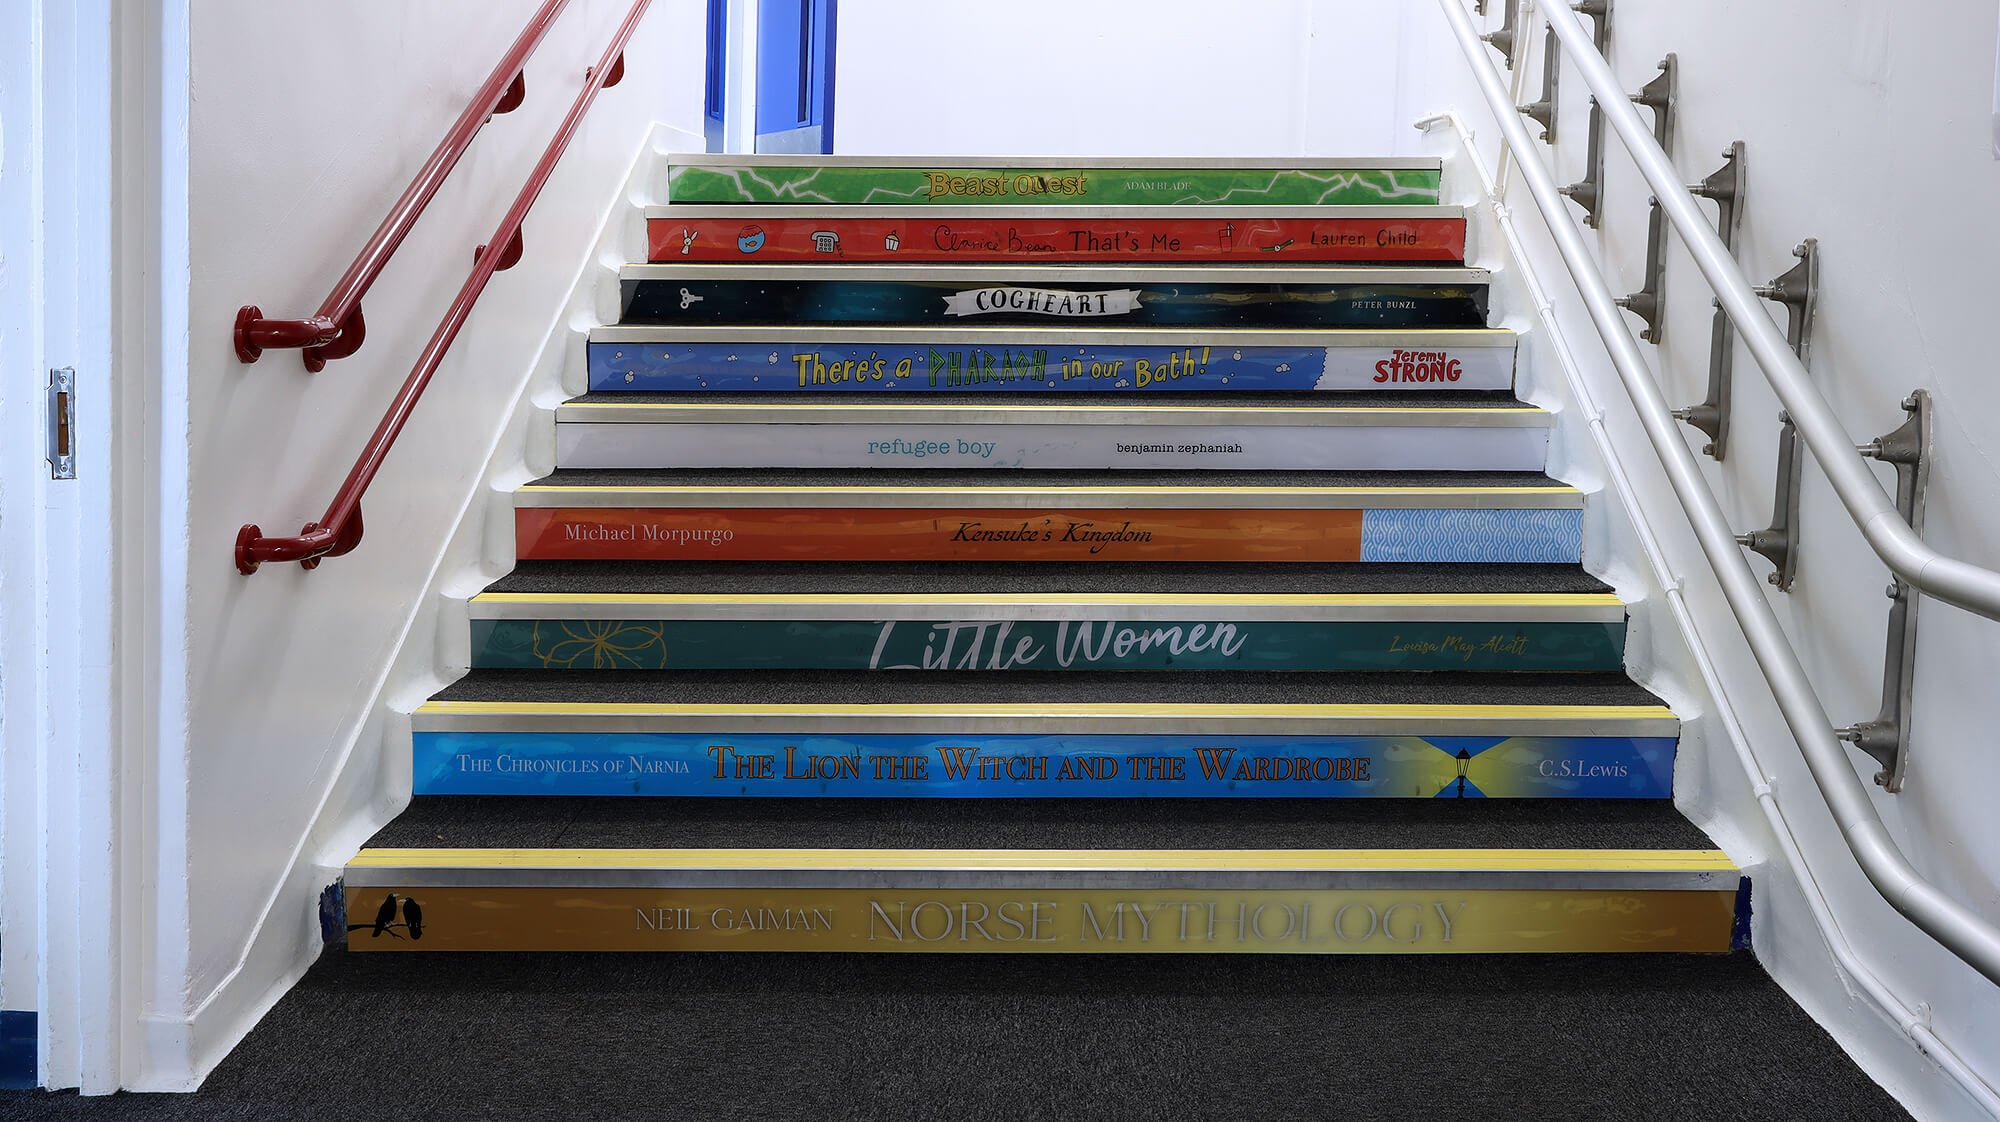 Netherton School Book Spine Stair Display 01.jpg